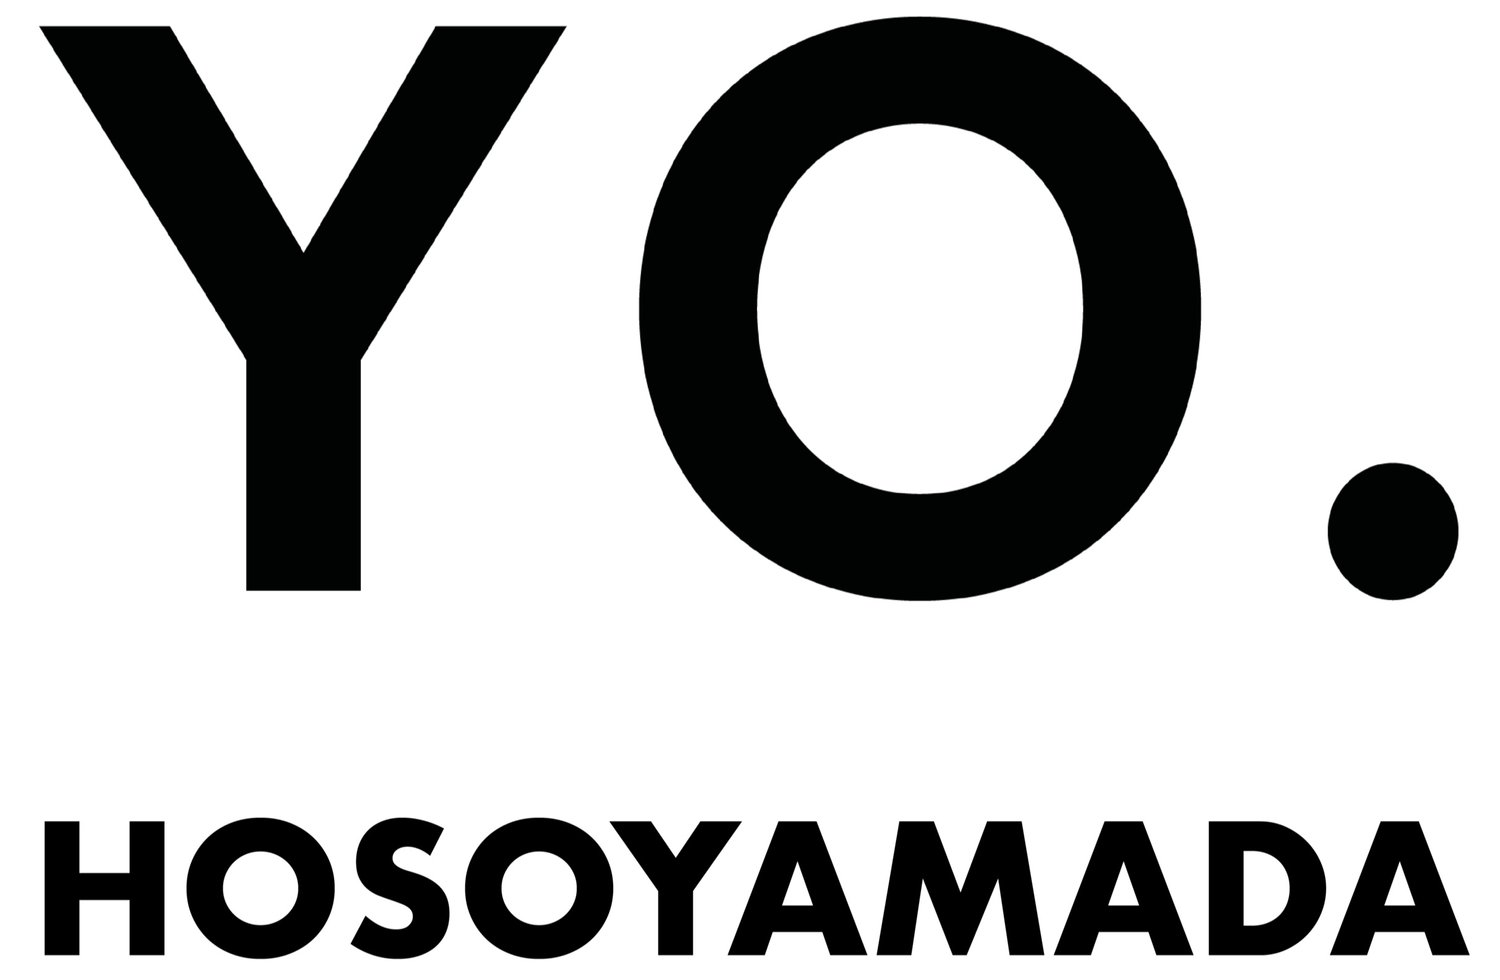 Yo Hosoyamada